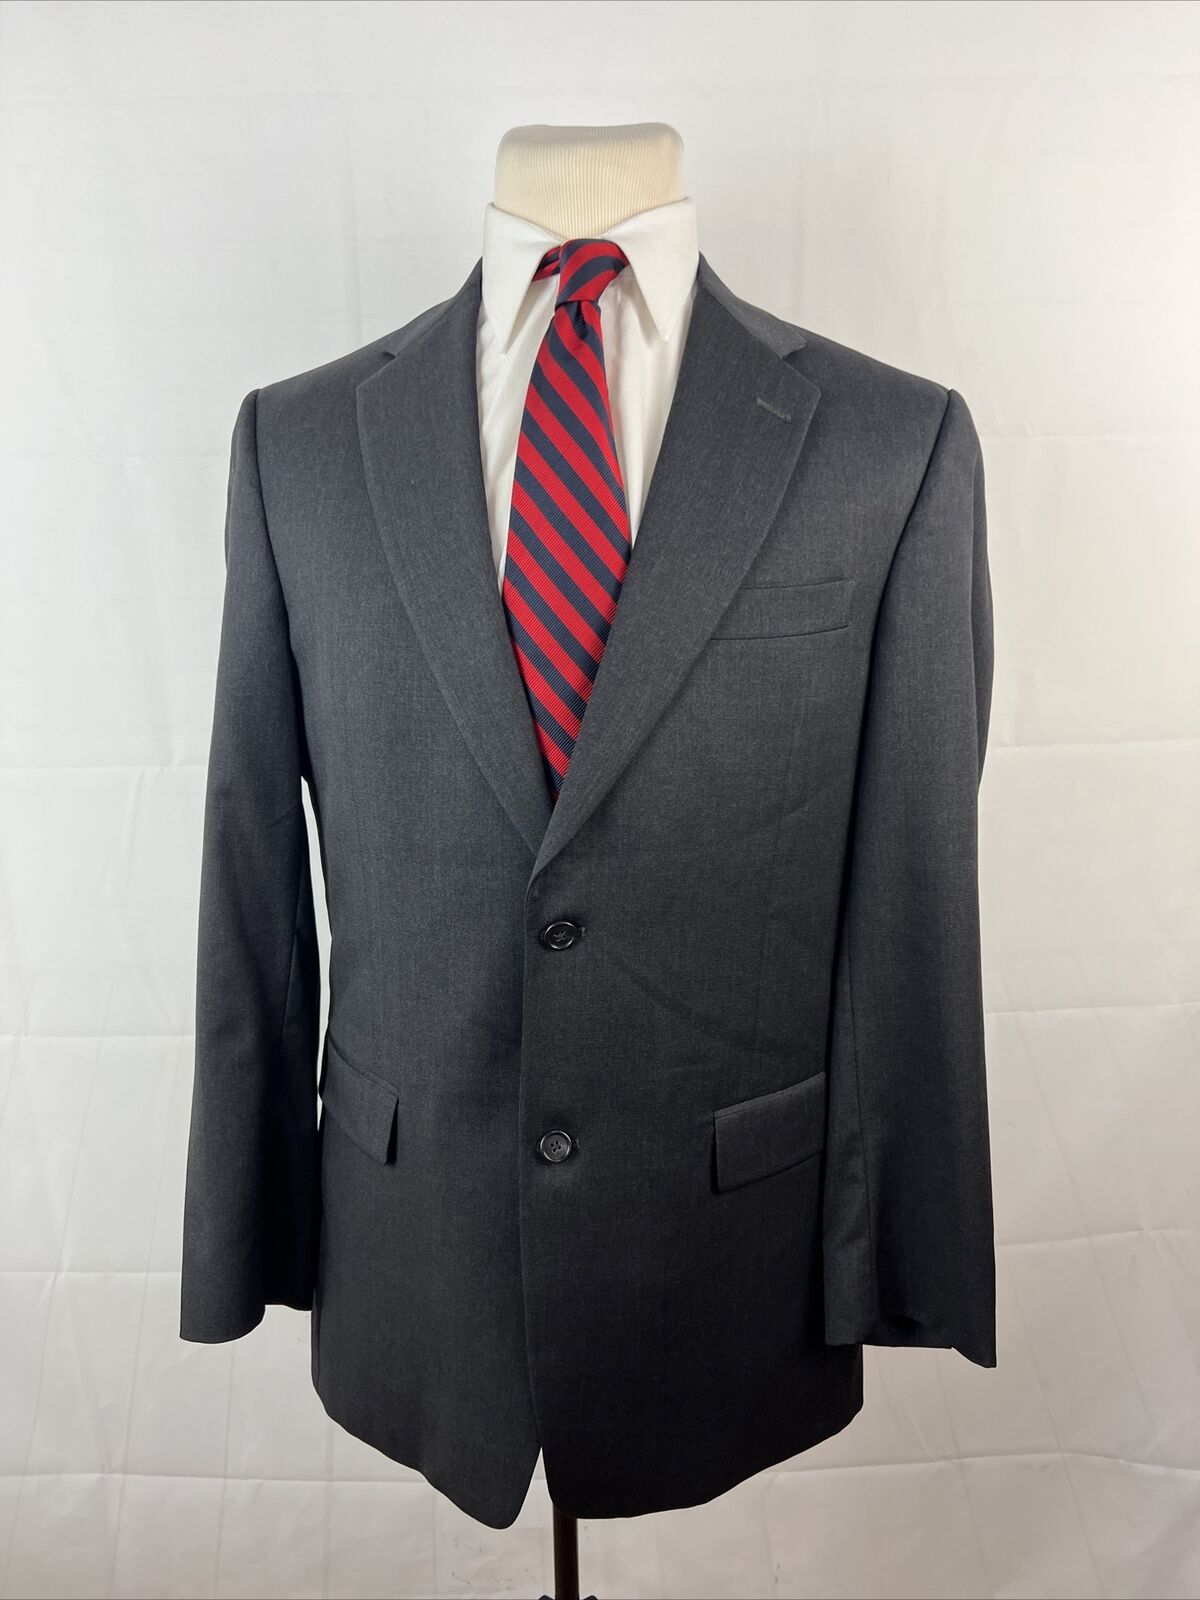 GOLD TRUMPETER Hart Schaffner Marx Men\'s Gray Solid Suit 40L 32X32 $1,395